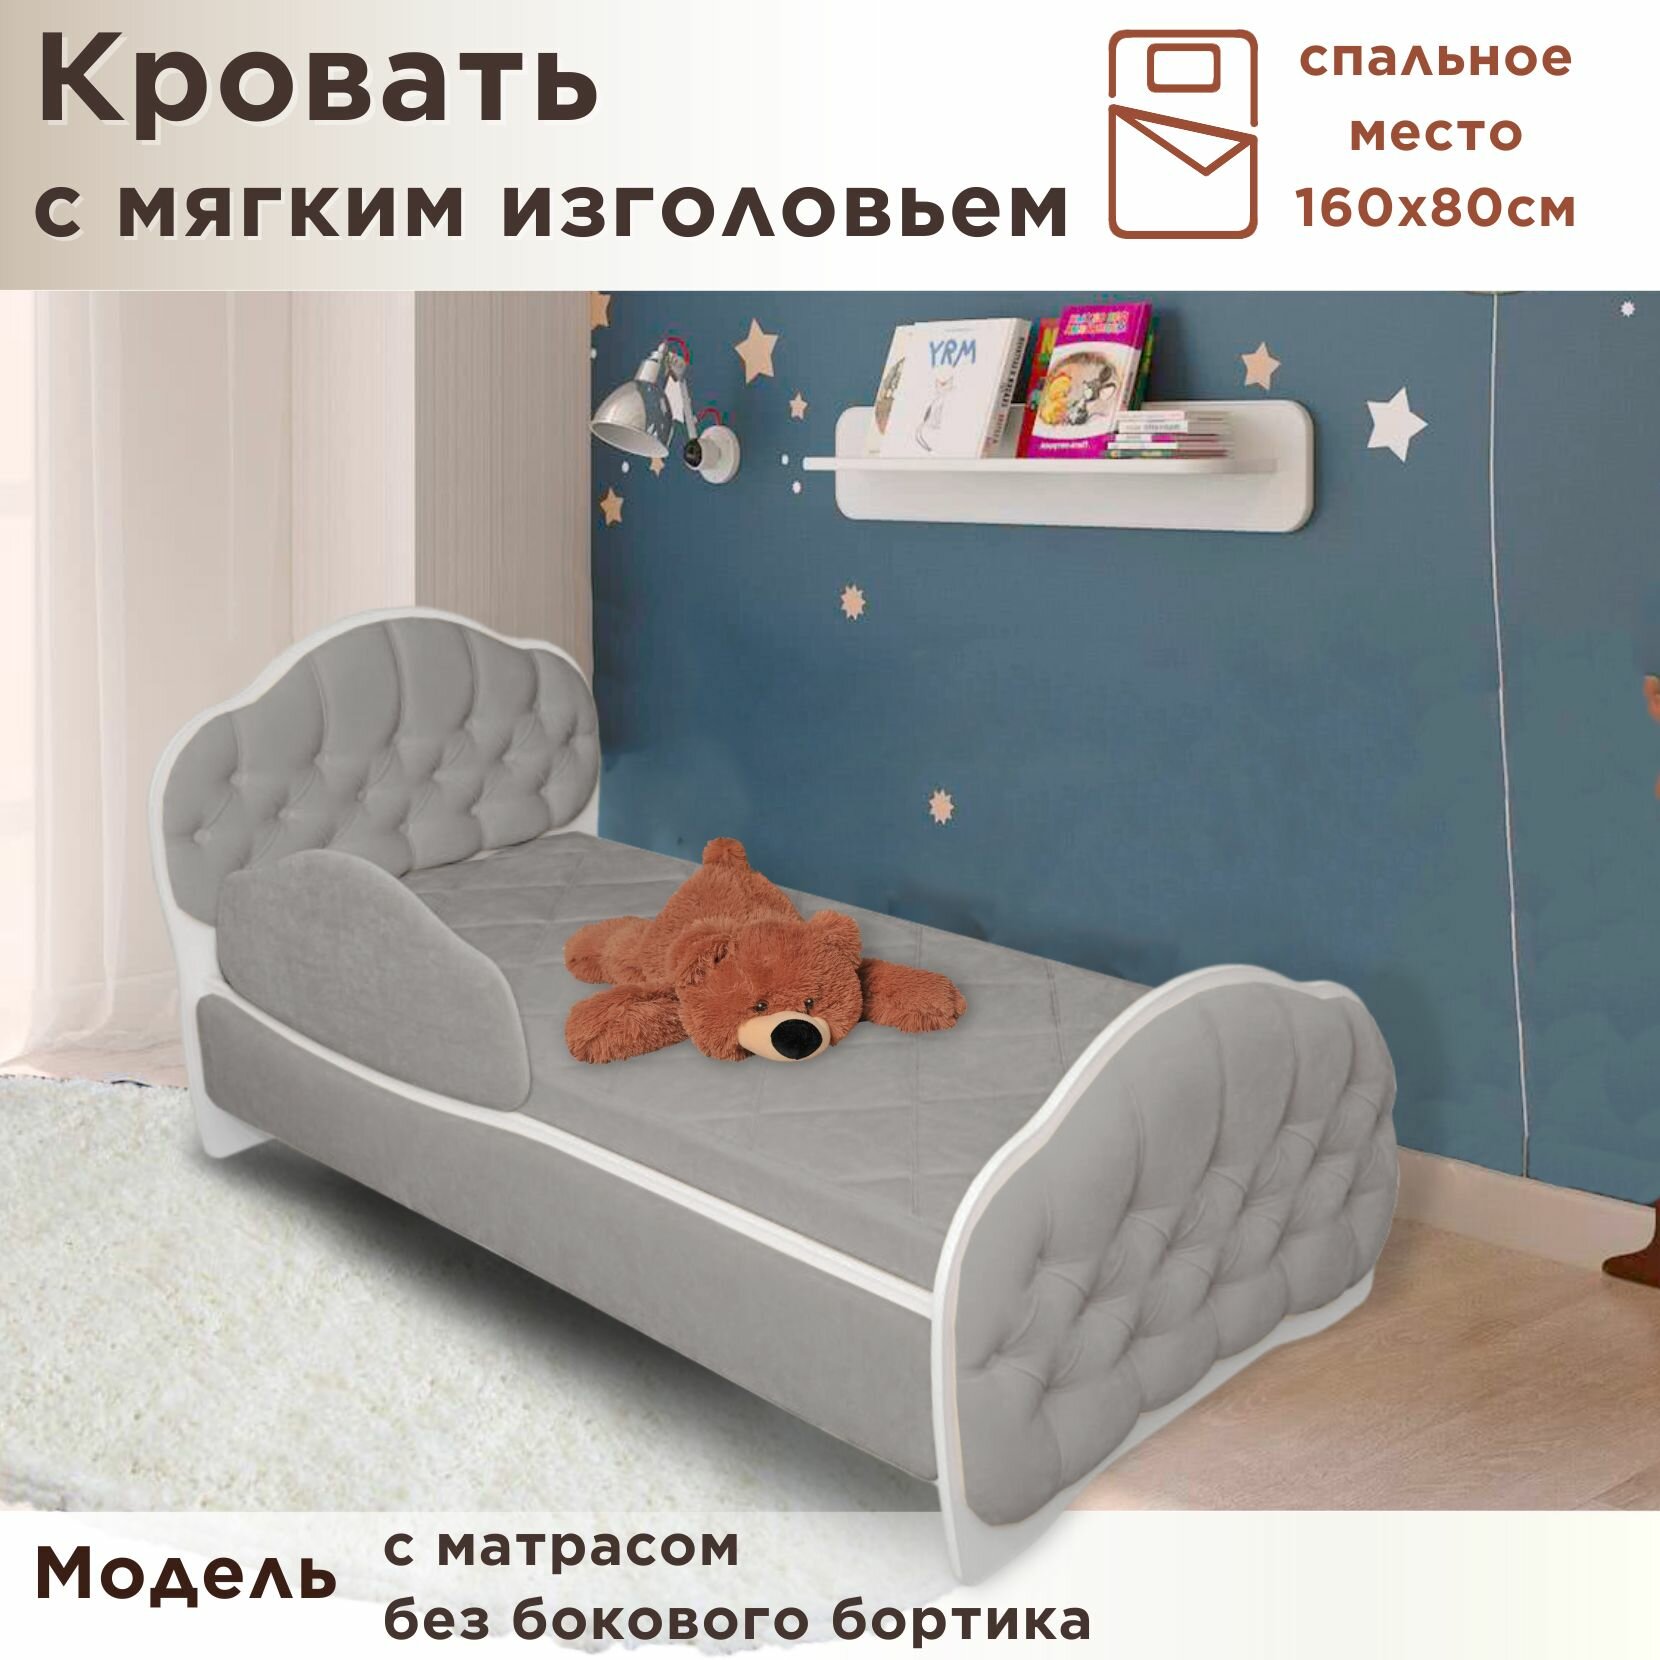 Кровать детская Гармония 160х80 см, Teddy 024, кровать + матрас